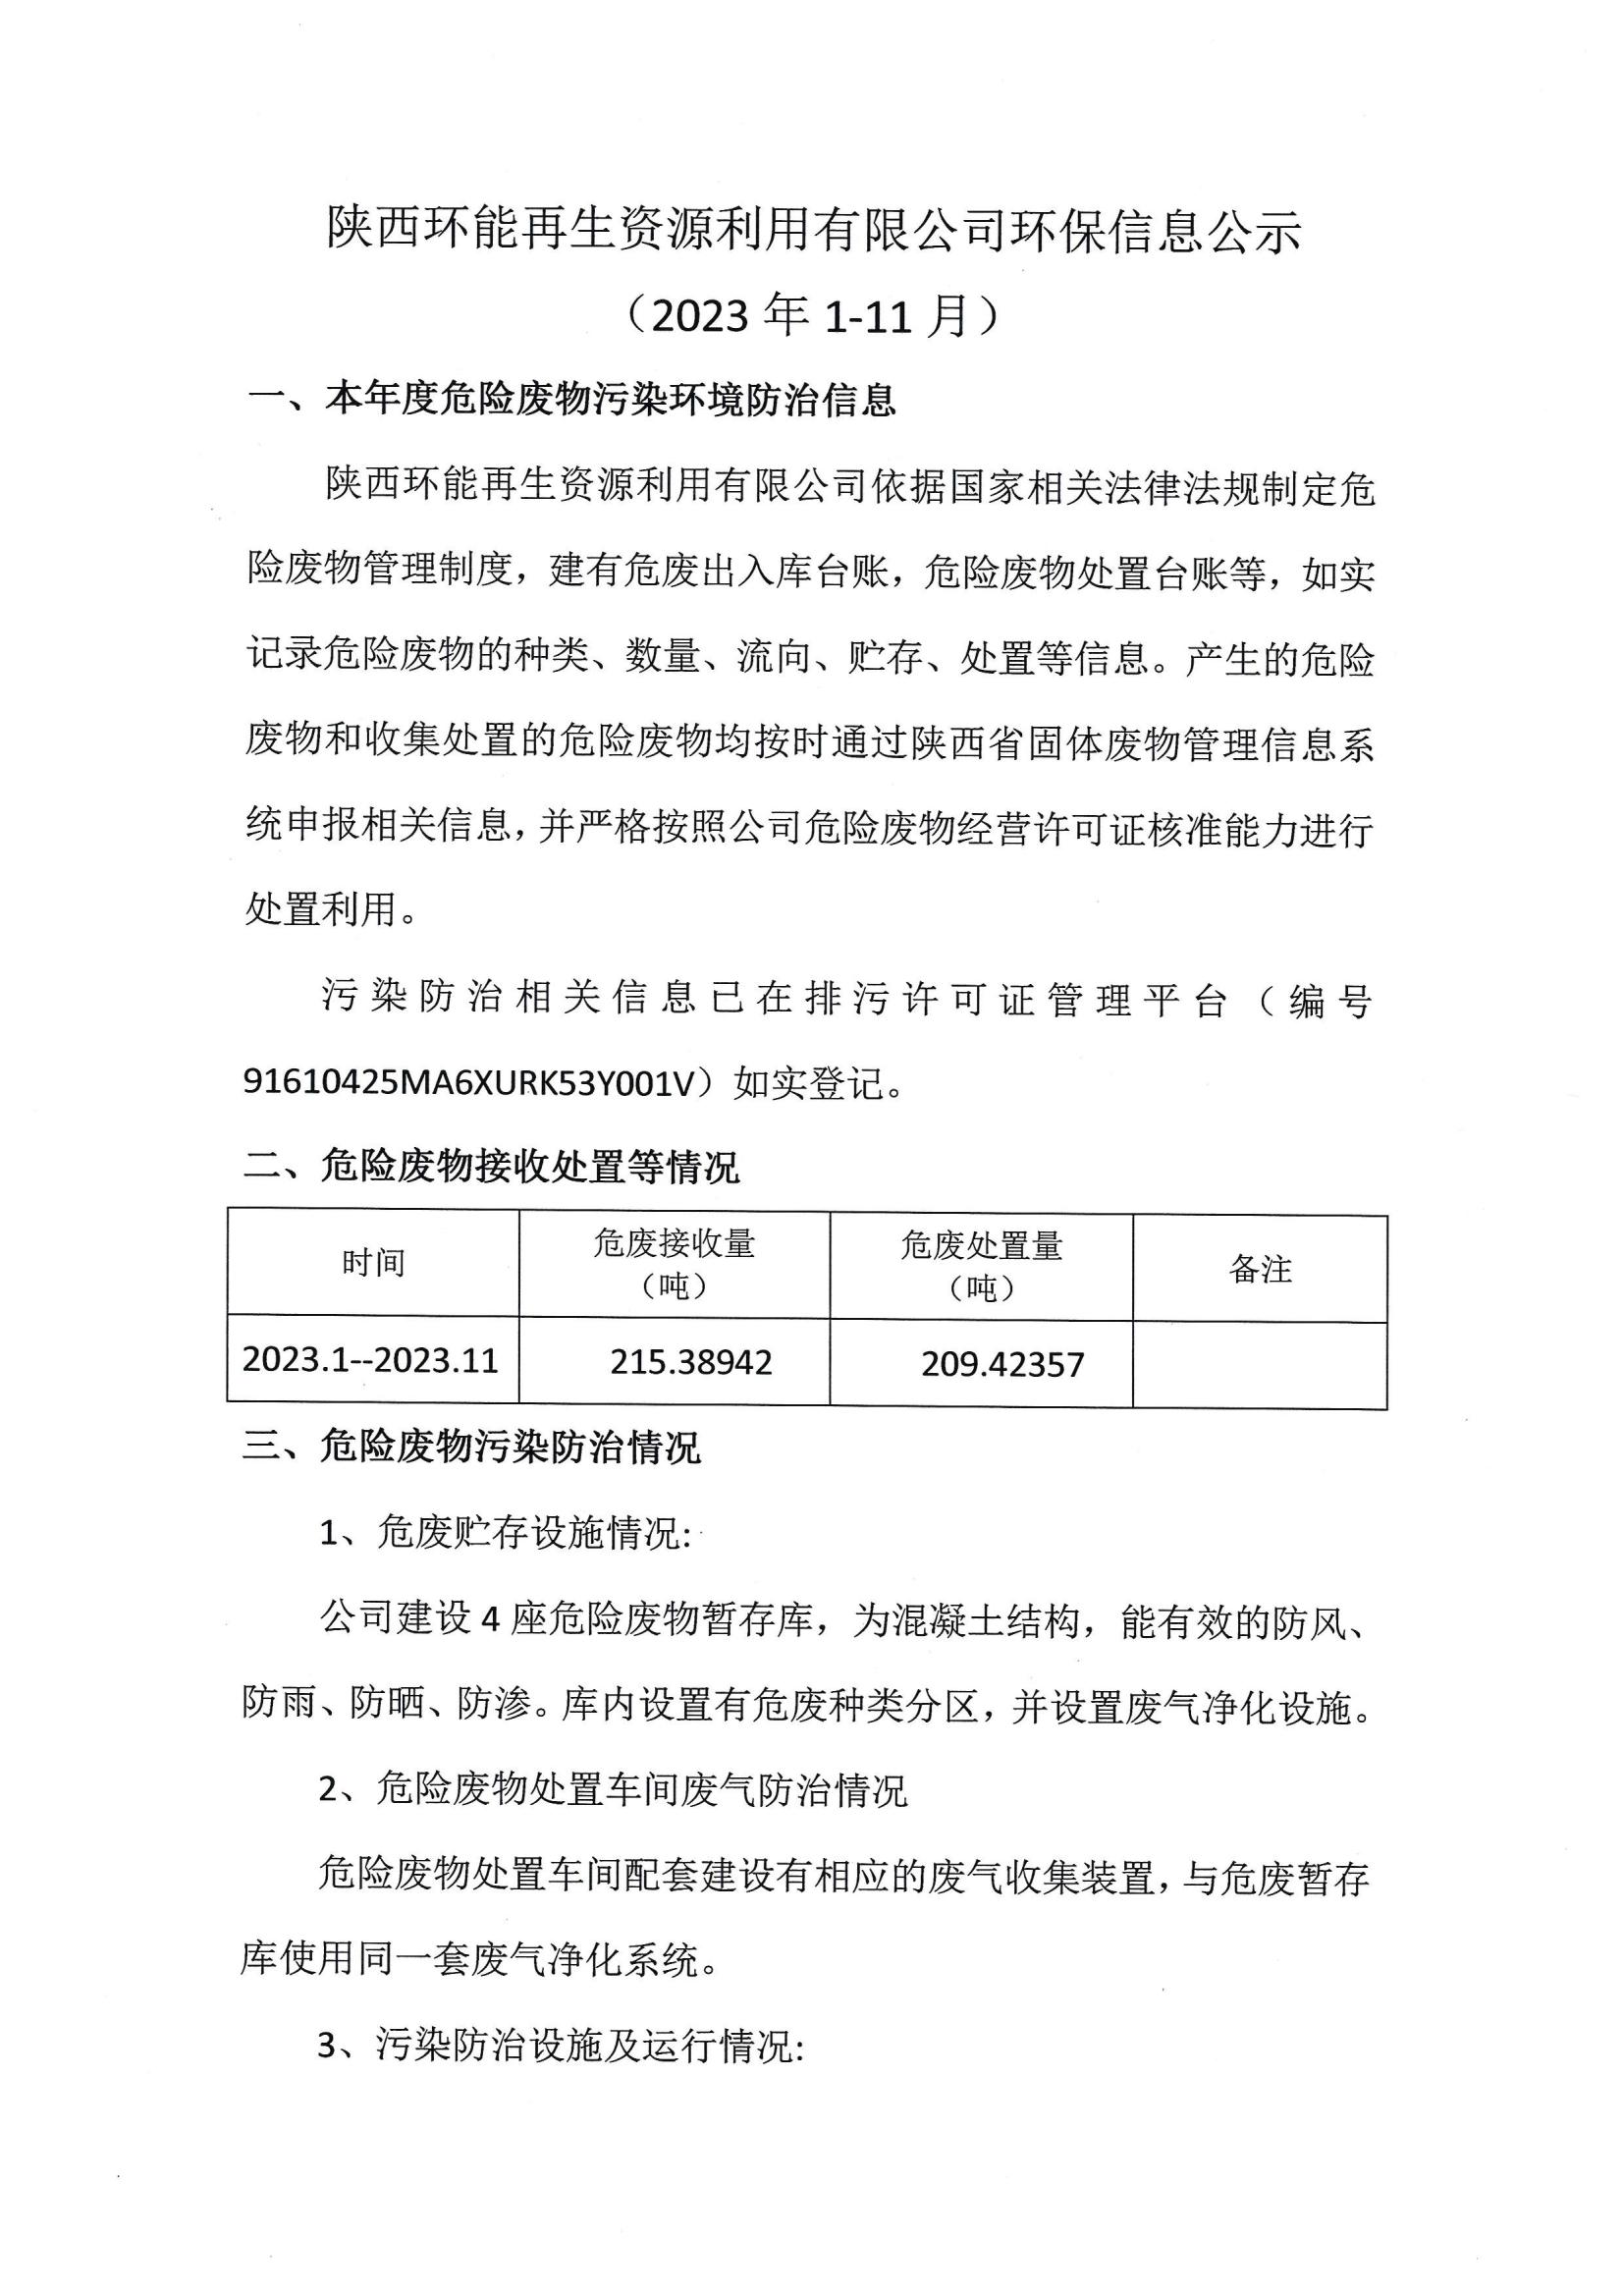 陕西环能再生资源利用有限公司环保信息公示（2023年1-11月）(1)_00.jpg